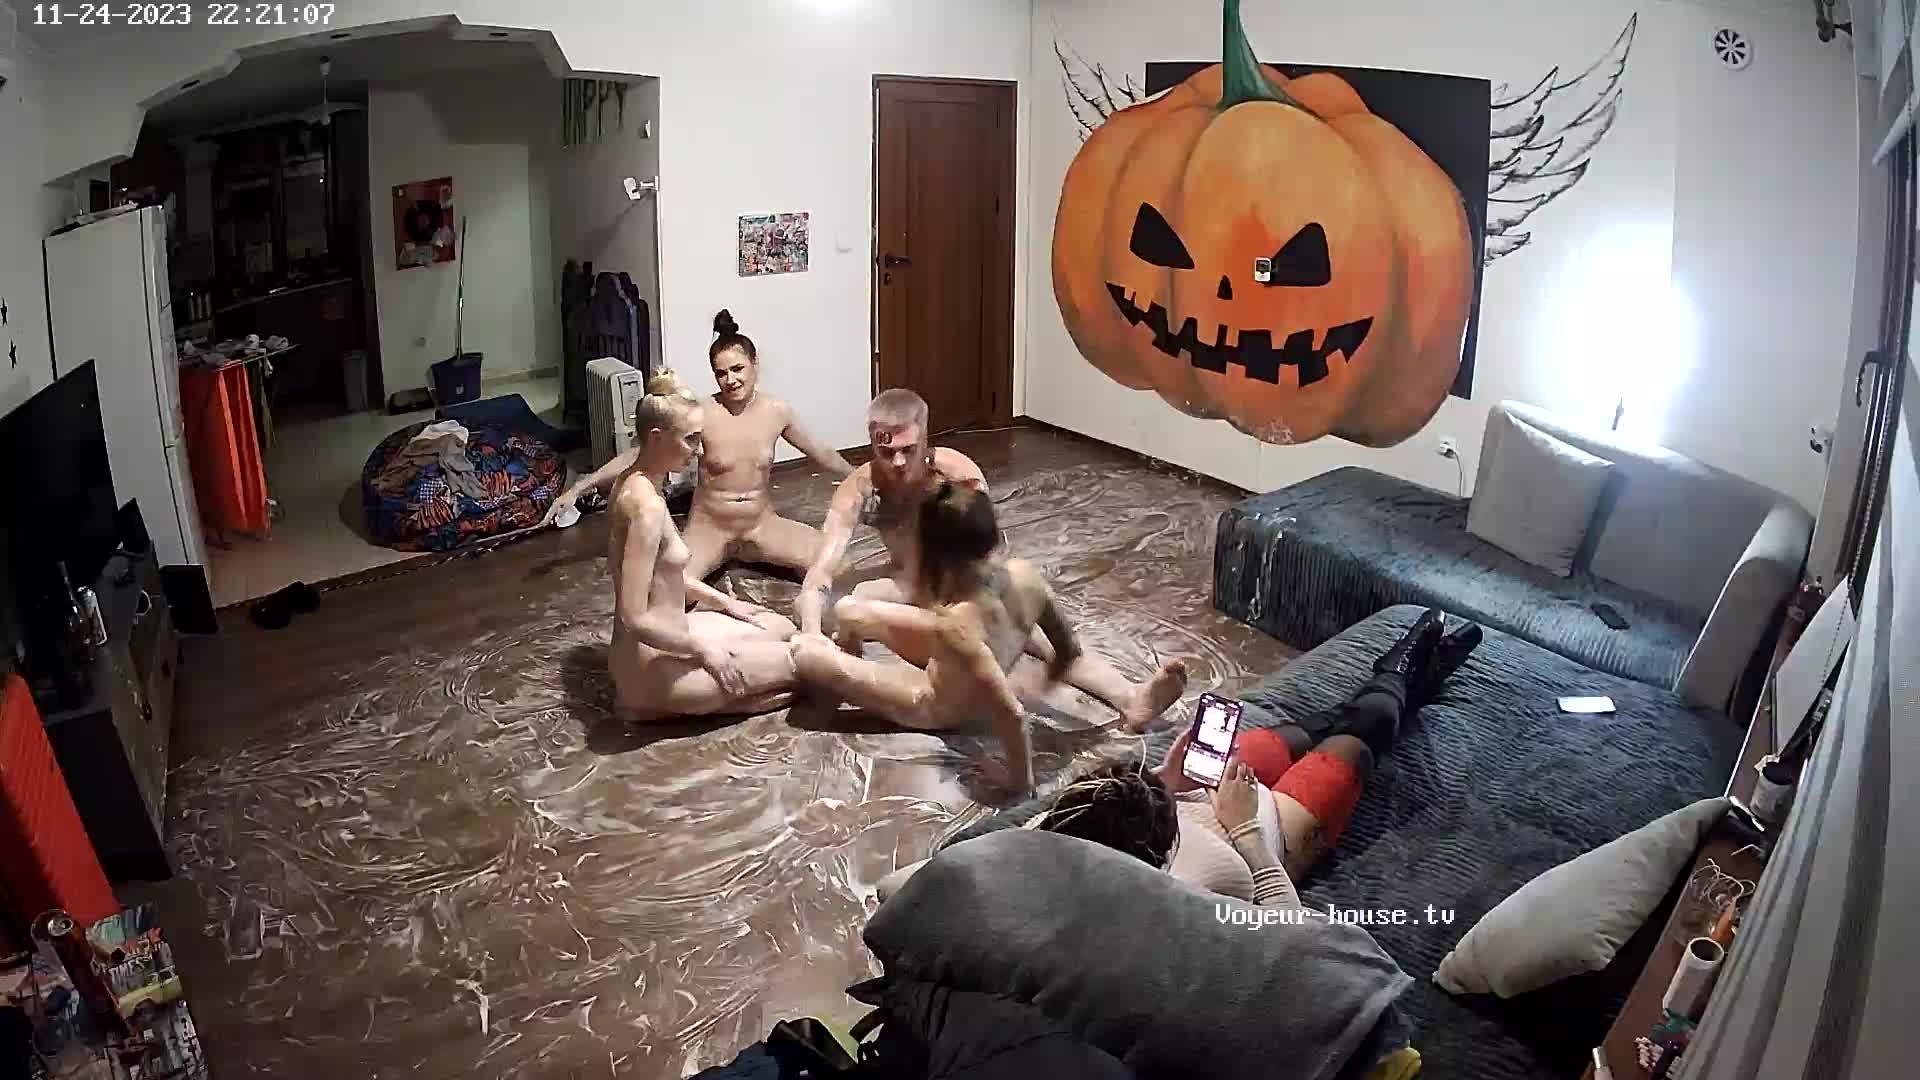 Anna, Yuneska & Radu and Tazmin naked slippery fun, Nov24/23